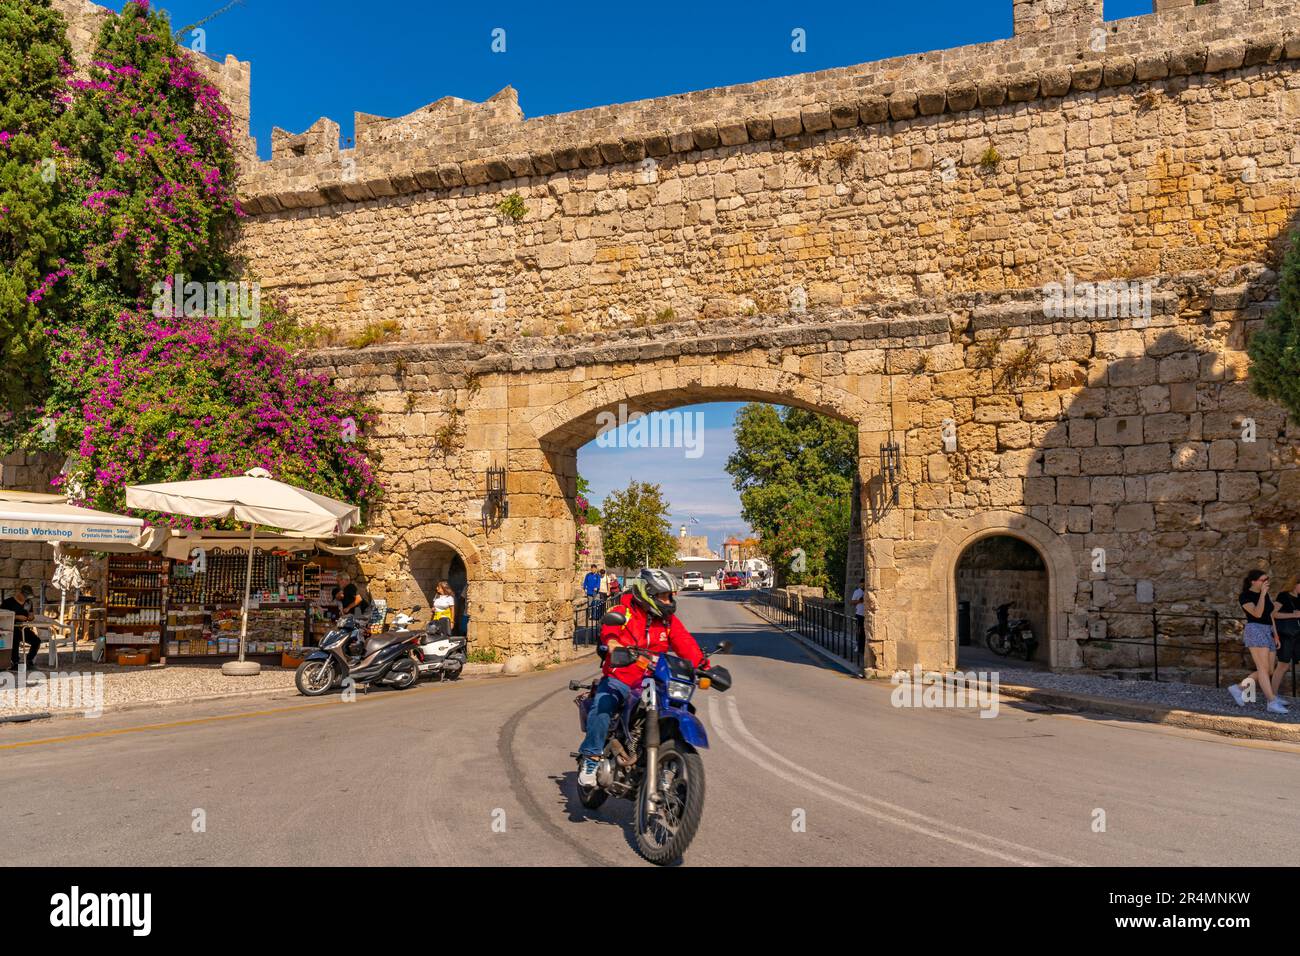 Vue sur Liberty Gate, la vieille ville de Rhodes, site classé au patrimoine mondial de l'UNESCO, Rhodes, Dodécanèse, îles grecques, Grèce, Europe Banque D'Images